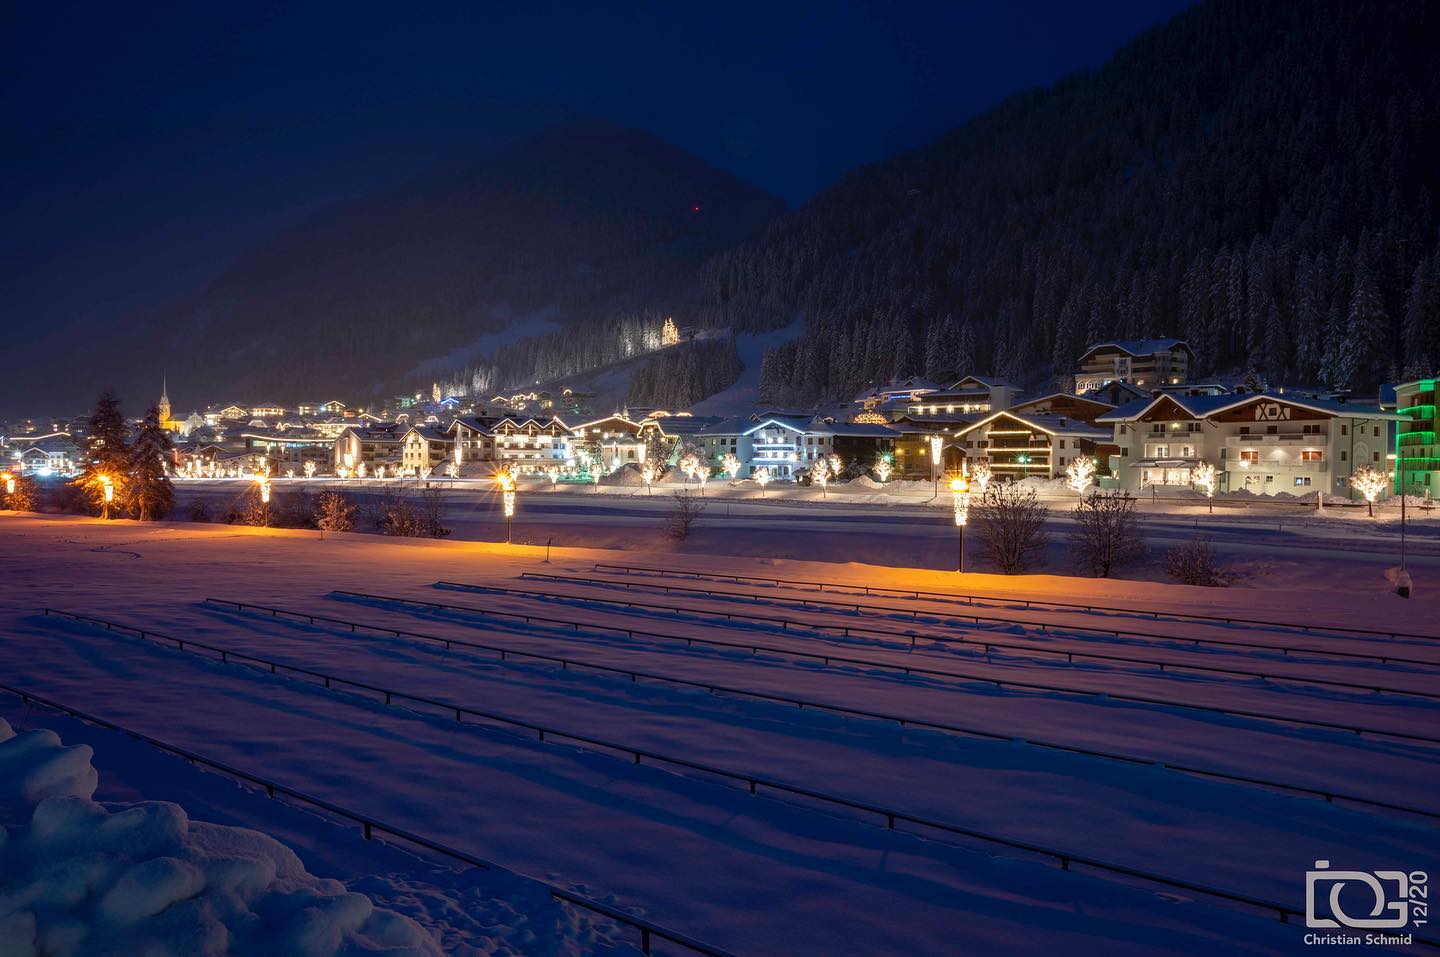 Austria se suma a los países que permiten abrir las estaciones de esquí en Navidades